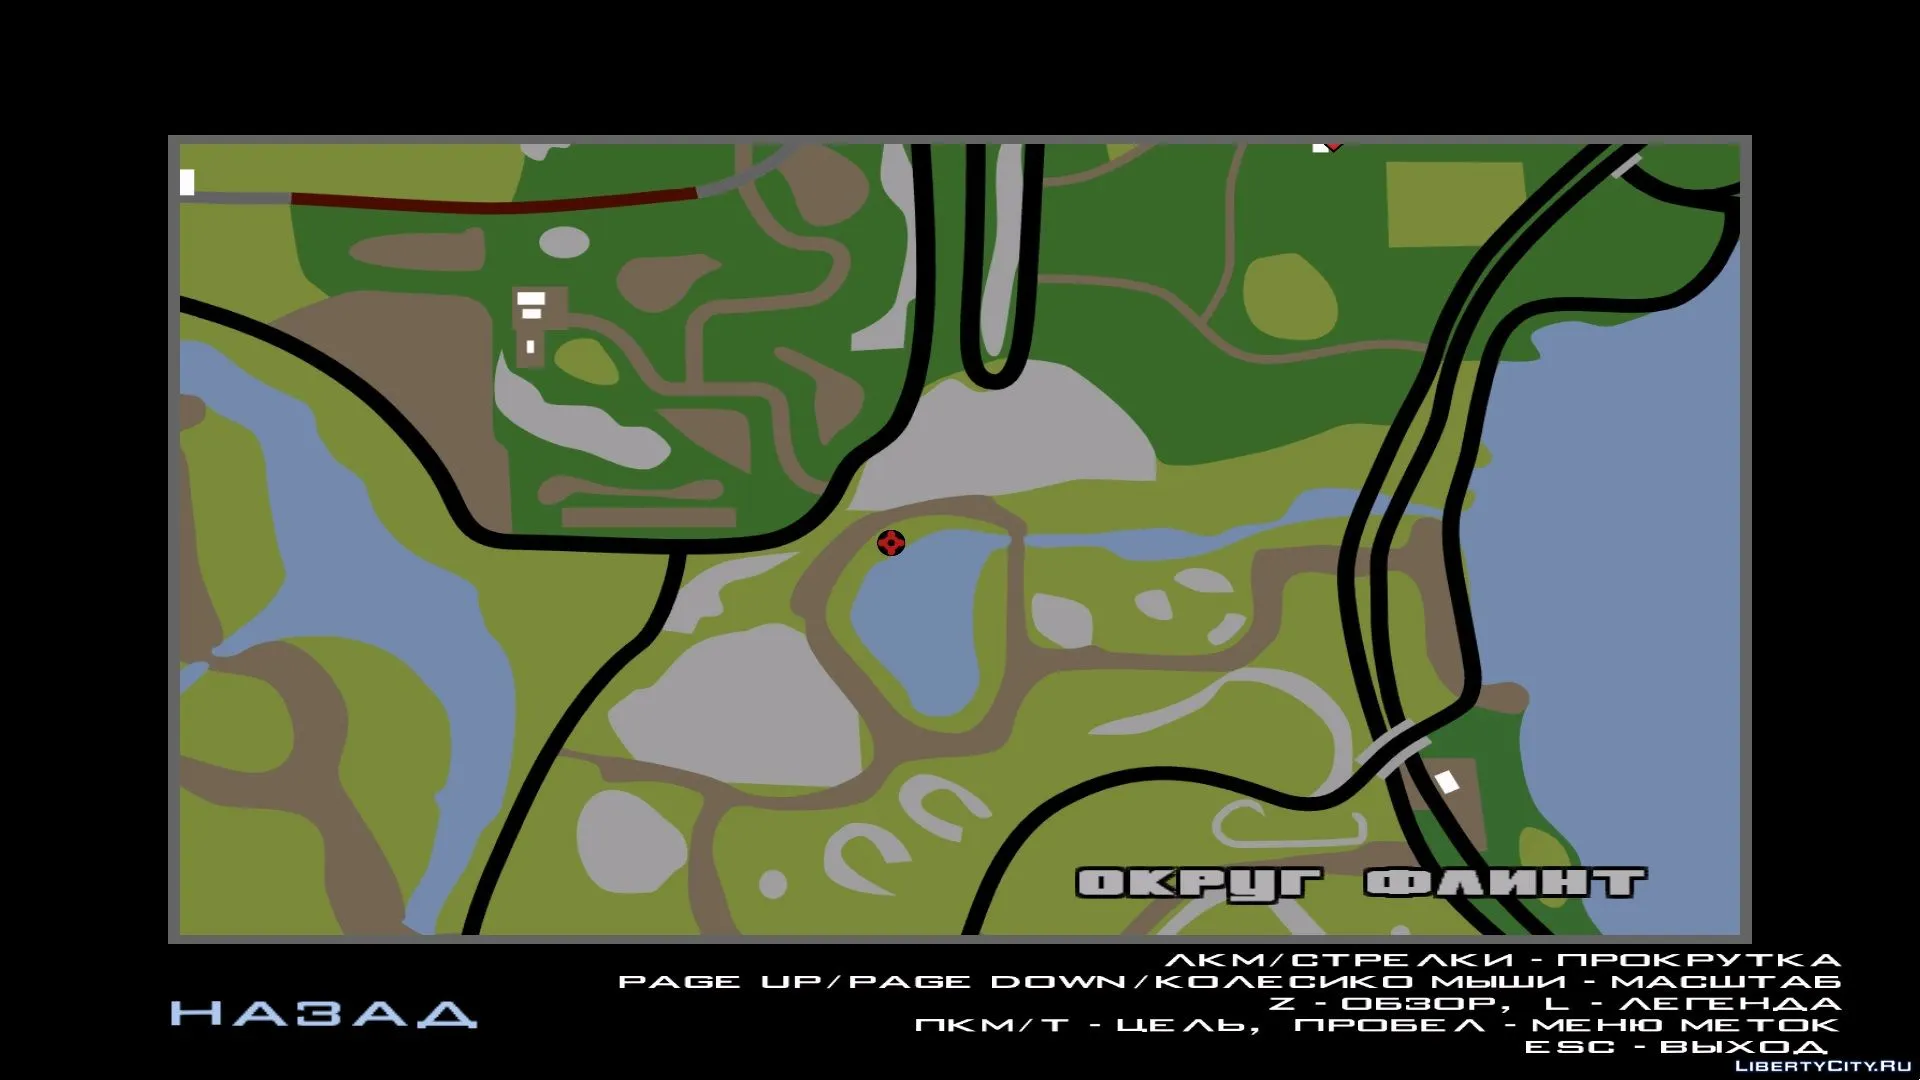 Gta сиреноголовое. Сиреноголовый в ГТА Сан андреас. Карта сиреноголовый. Моды на GTA San Andreas на сиреноголового.